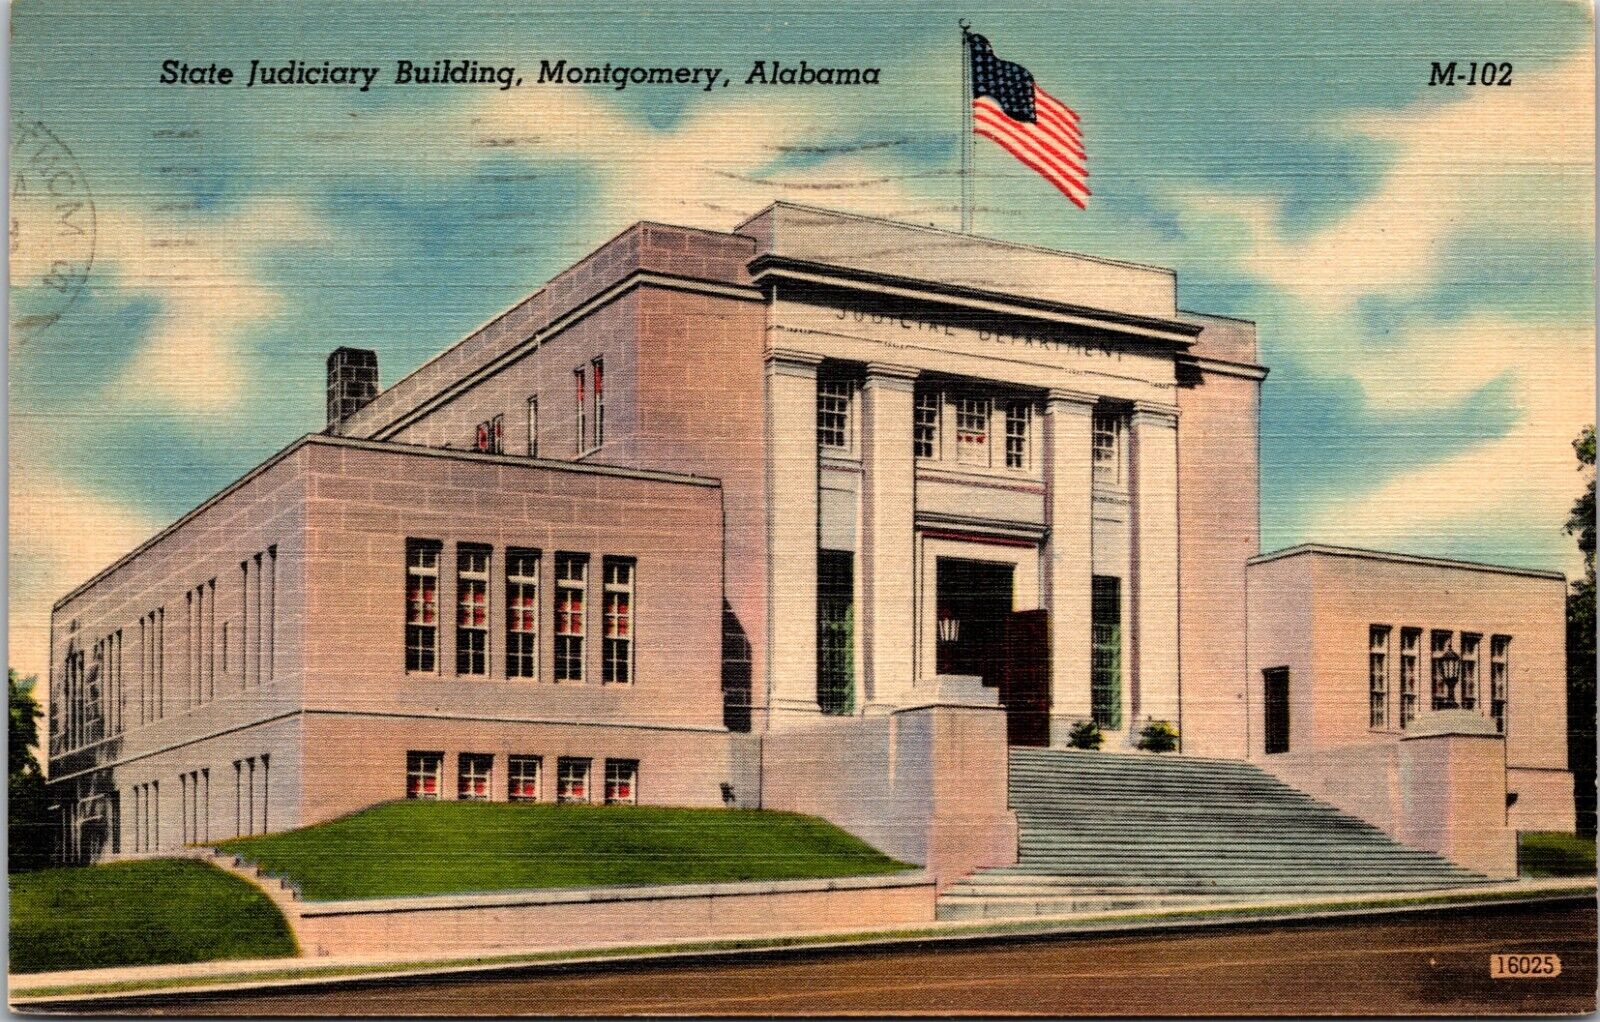 State Judiciary Building, Montgomery, Alabama - Postcard